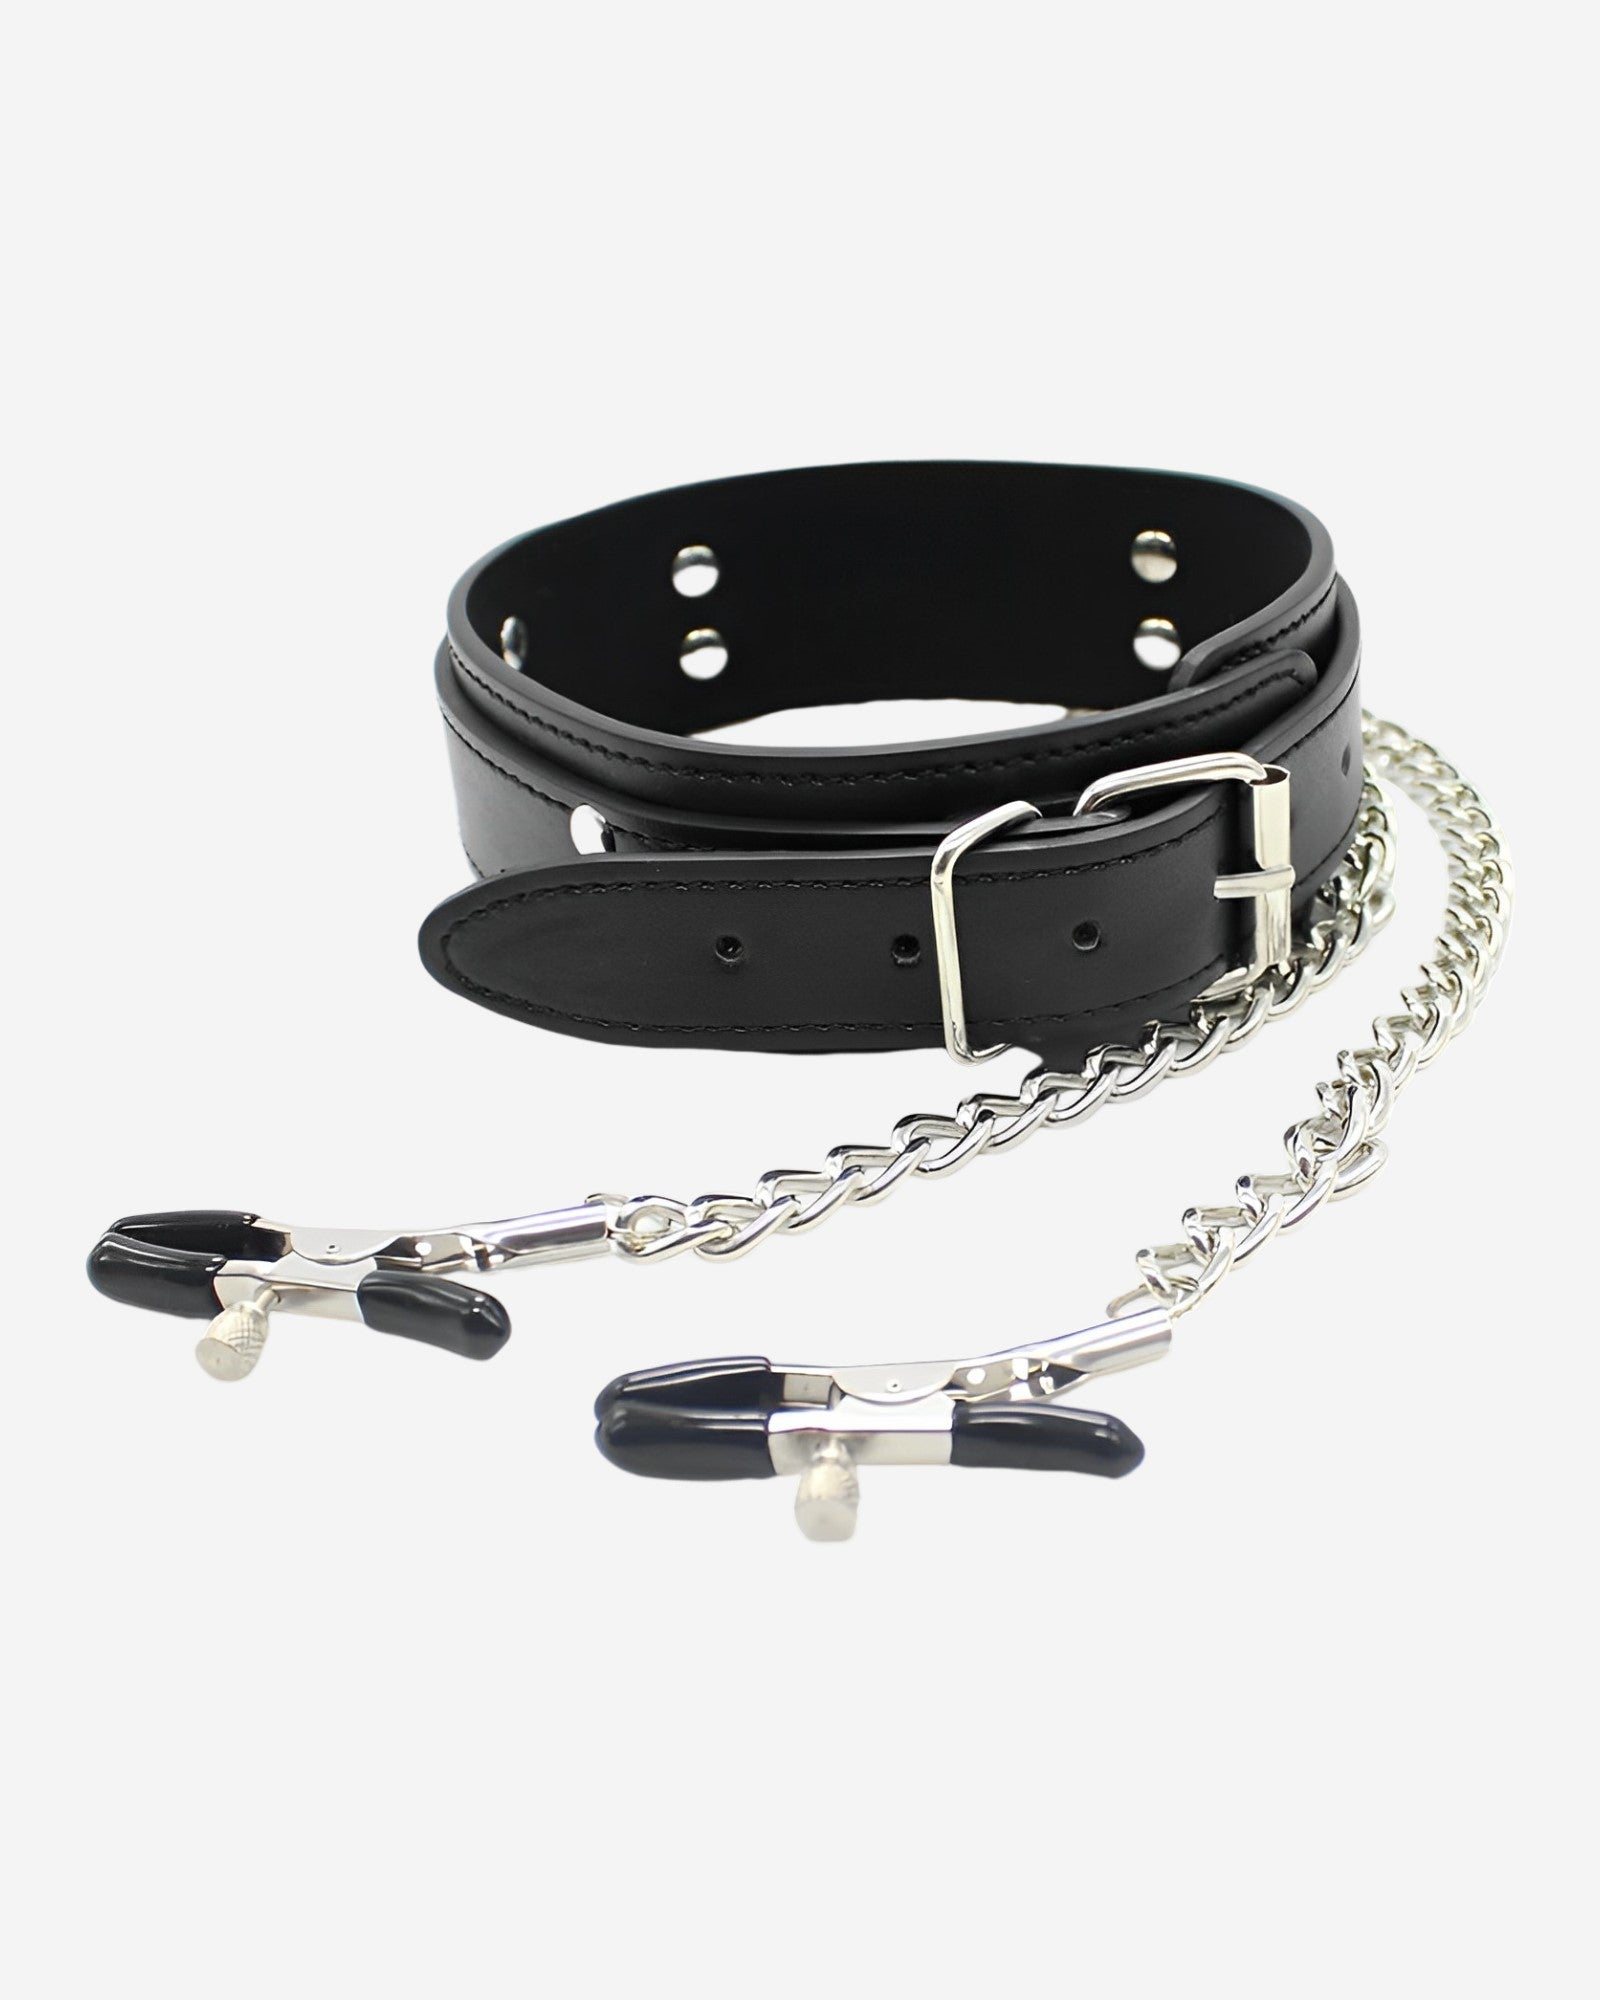 Black Bondage Necklace, Bdsm Choke Chain Leash